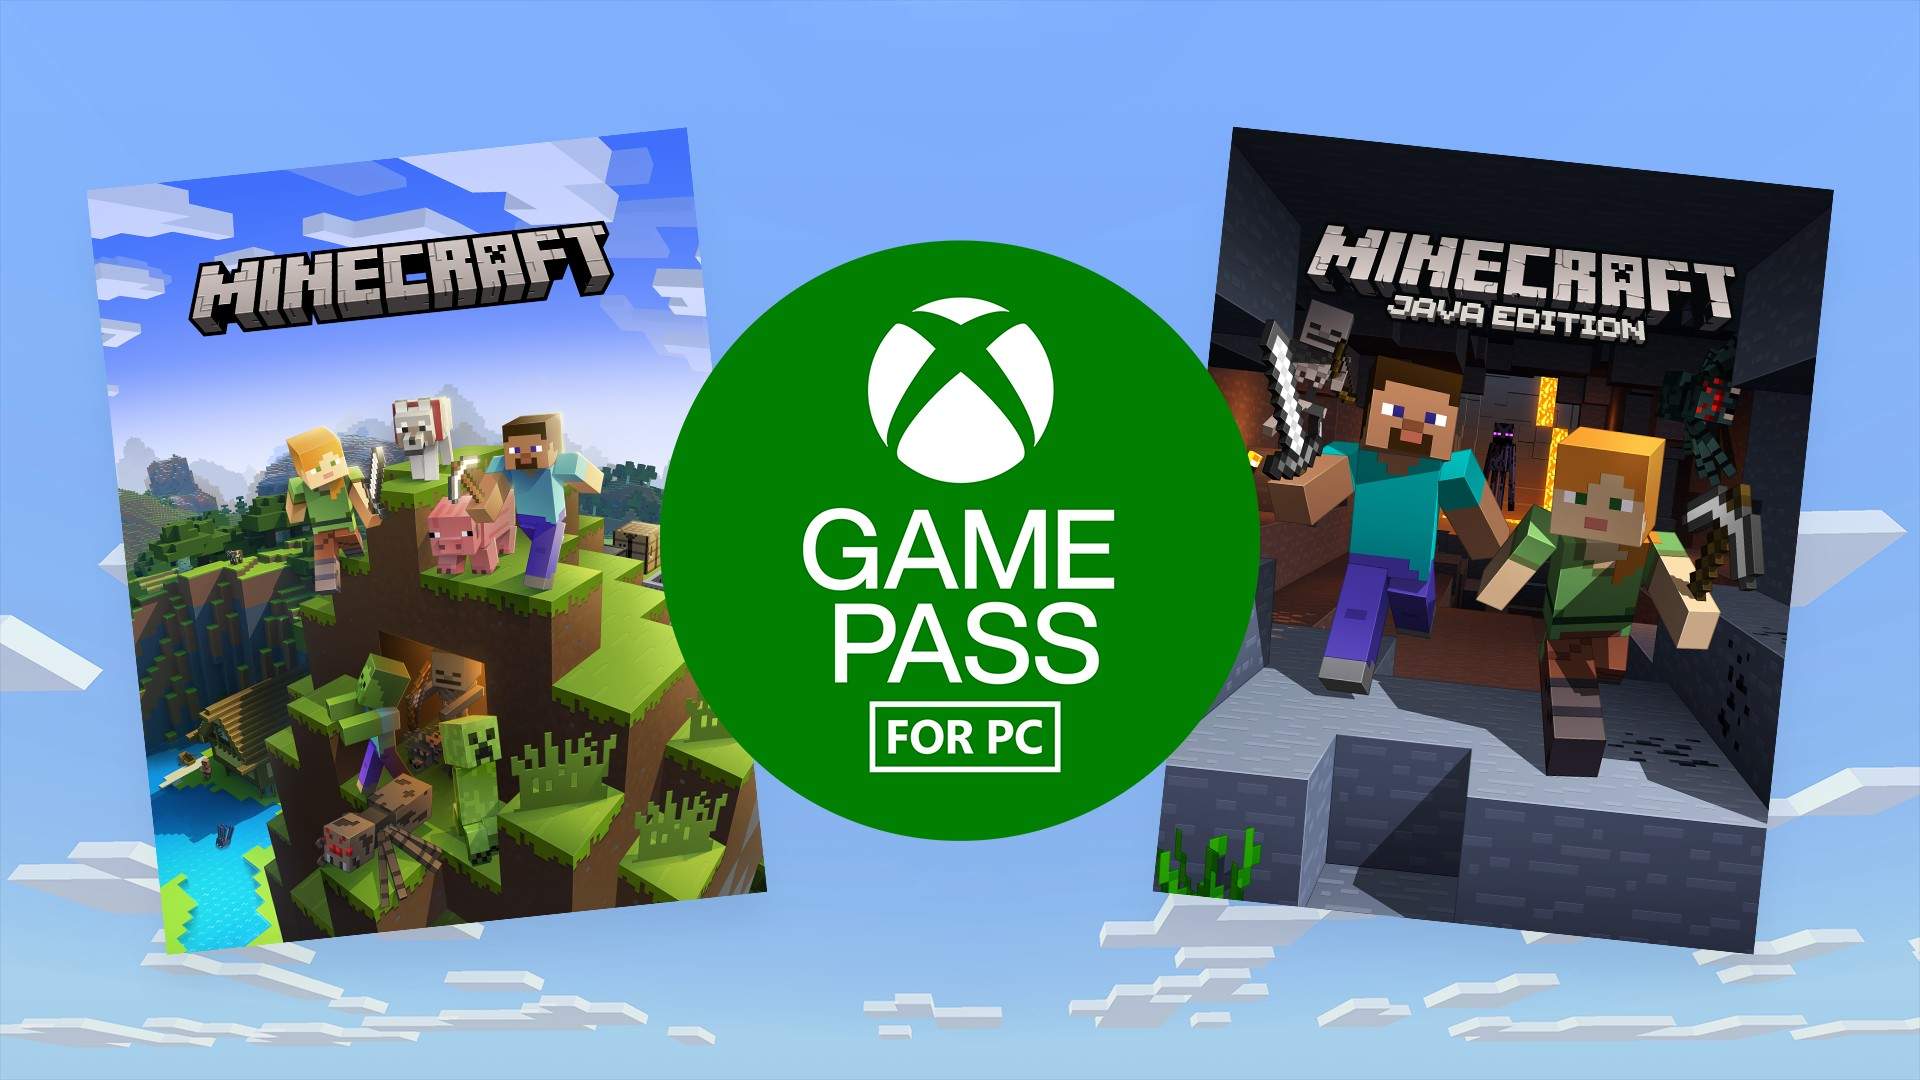 Acumulación menú Publicación Minecraft ya está disponible en Game Pass para Pc! - Xbox Wire en Español